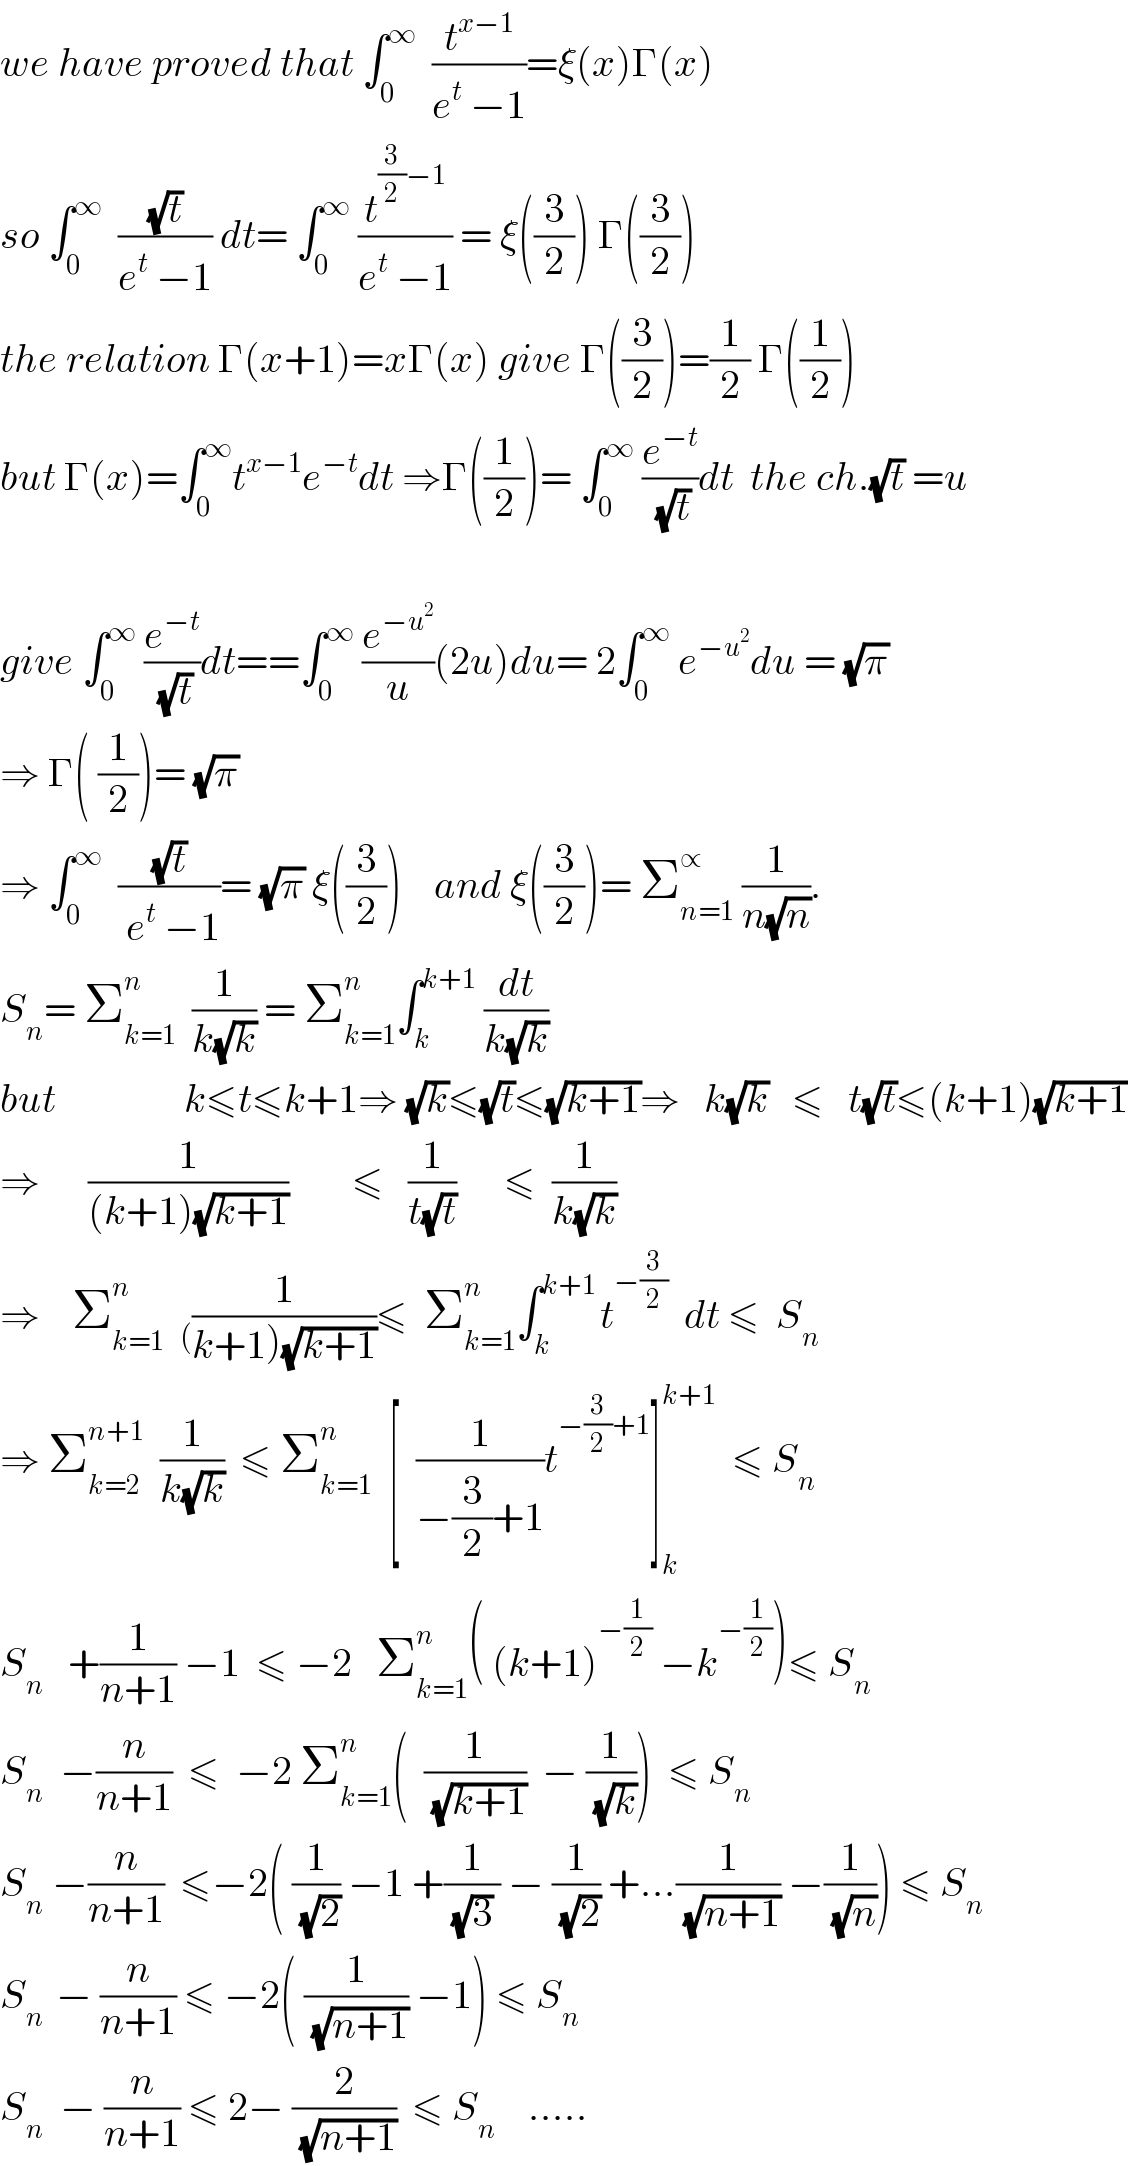 we have proved that ∫_0 ^∞   (t^(x−1) /(e^t  −1))=ξ(x)Γ(x)  so ∫_0 ^∞   ((√t)/(e^t  −1)) dt= ∫_0 ^∞  (t^((3/2)−1) /(e^t  −1)) = ξ((3/2)) Γ((3/2))  the relation Γ(x+1)=xΓ(x) give Γ((3/2))=(1/2) Γ((1/2))  but Γ(x)=∫_0 ^∞ t^(x−1) e^(−t) dt ⇒Γ((1/2))= ∫_0 ^∞  (e^(−t) /(√t))dt  the ch.(√t) =u    give ∫_0 ^∞  (e^(−t) /(√t))dt==∫_0 ^∞  (e^(−u^2 ) /u)(2u)du= 2∫_0 ^∞  e^(−u^2 ) du = (√π)  ⇒ Γ( (1/2))= (√π)  ⇒ ∫_0 ^∞   ((√t)/( e^t  −1))= (√π) ξ((3/2))    and ξ((3/2))= Σ_(n=1) ^∝  (1/(n(√n))).  S_n = Σ_(k=1) ^(n )   (1/(k(√k))) = Σ_(k=1) ^n ∫_k ^(k+1)  (dt/(k(√k)))  but                k≤t≤k+1⇒ (√k)≤(√t)≤(√(k+1))⇒   k(√k)   ≤   t(√t)≤(k+1)(√(k+1))  ⇒      (1/((k+1)(√(k+1))))        ≤   (1/(t(√t)))      ≤  (1/(k(√k)))  ⇒    Σ_(k=1) ^n   _( (1/(k+1)(√(k+1))))≤  Σ_(k=1) ^n ∫_k ^(k+1 ) t^(−(3/2))   dt ≤  S_n   ⇒ Σ_(k=2) ^(n+1)   (1/(k(√k)))  ≤ Σ_(k=1) ^n   [  (1/(−(3/2)+1))t^(−(3/2)+1) ]_k ^(k+1)   ≤ S_n   S_n    +(1/(n+1)) −1  ≤ −2   Σ_(k=1) ^n ( (k+1)^(−(1/2))  −k^(−(1/2)) )≤ S_n   S_n   −(n/(n+1))  ≤  −2 Σ_(k=1) ^n (  (1/(√(k+1)))  − (1/(√k)))  ≤ S_n   S_n  −(n/(n+1))  ≤−2( (1/(√2)) −1 +(1/((√3) )) − (1/(√2)) +...(1/(√(n+1))) −(1/(√n))) ≤ S_n   S_(n )  − (n/(n+1)) ≤ −2( (1/(√(n+1))) −1) ≤ S_n   S_n   − (n/(n+1)) ≤ 2− (2/(√(n+1)))  ≤ S_n     .....  